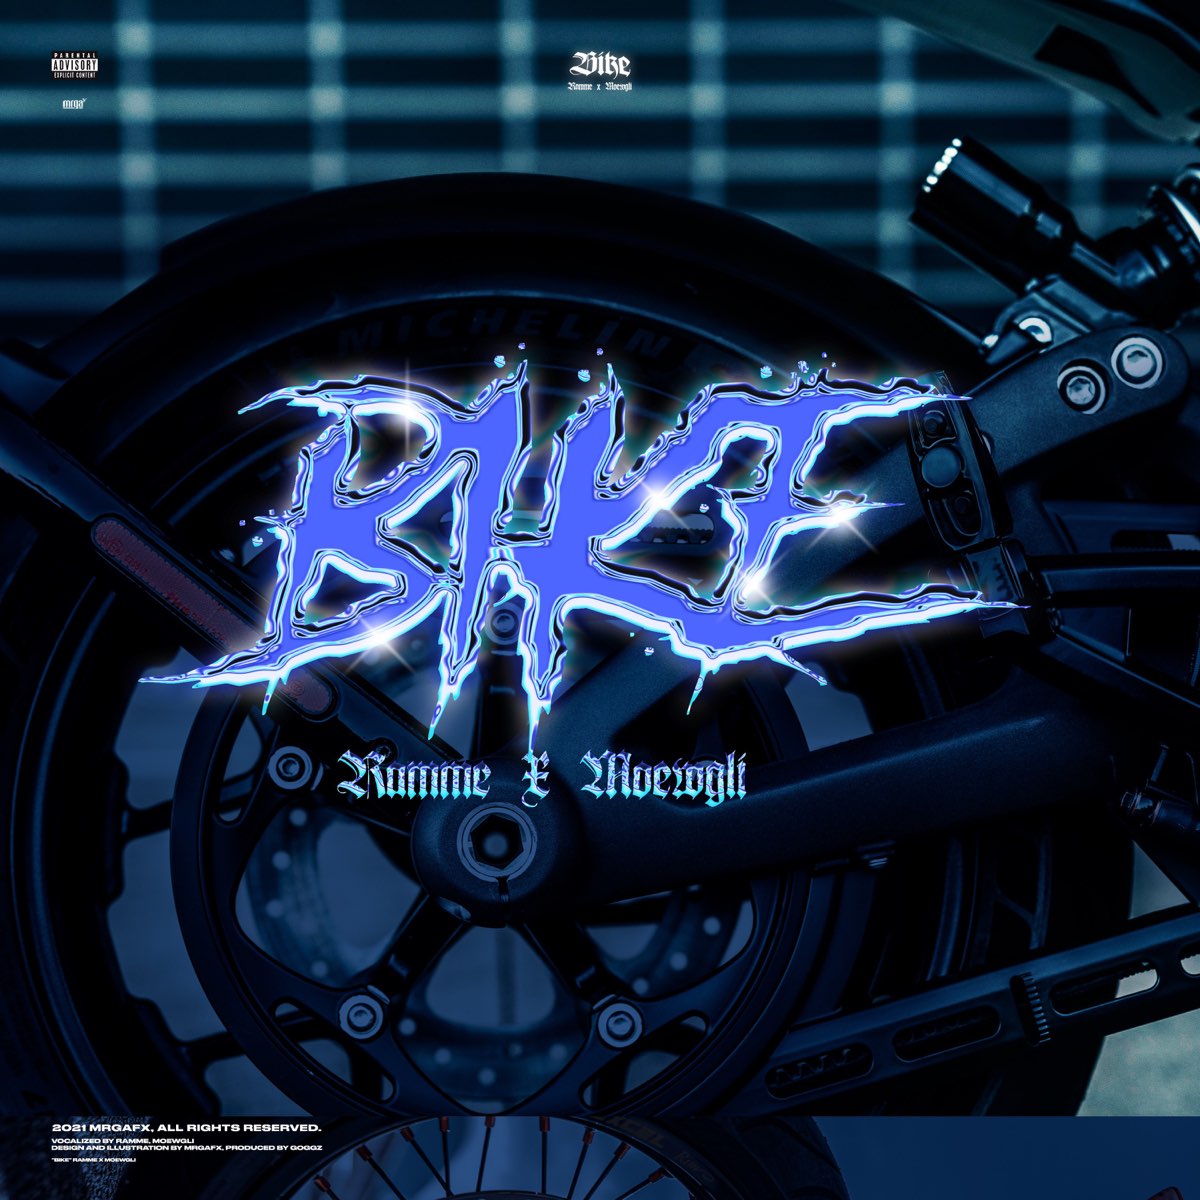 Bike song. Ramme. Streamer on the Bike.